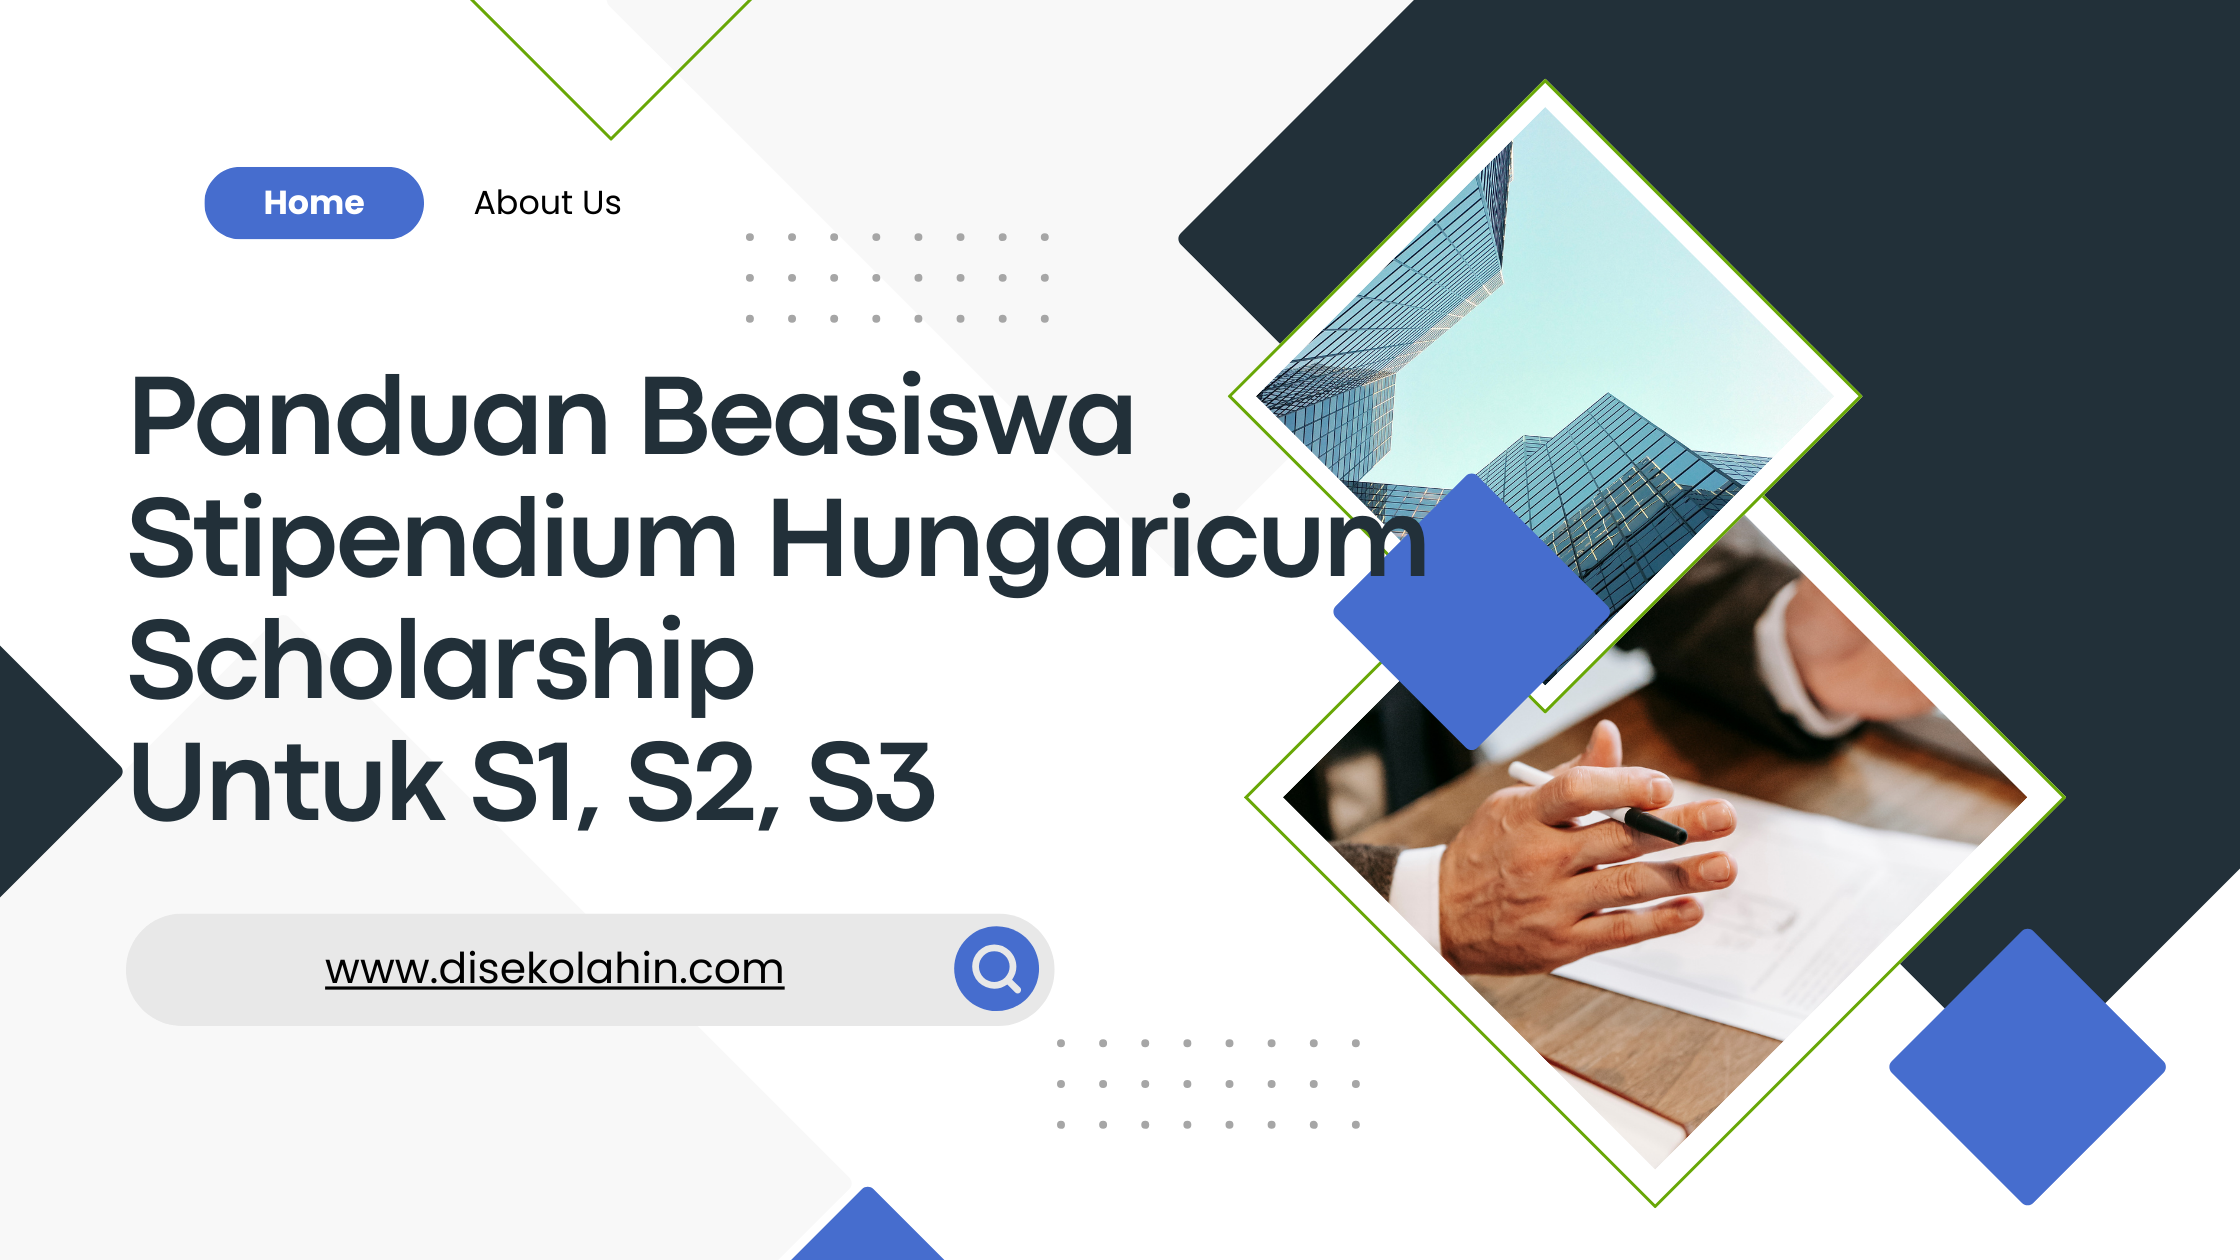 Beasiswa Stipendium Hungaricum Scholarship